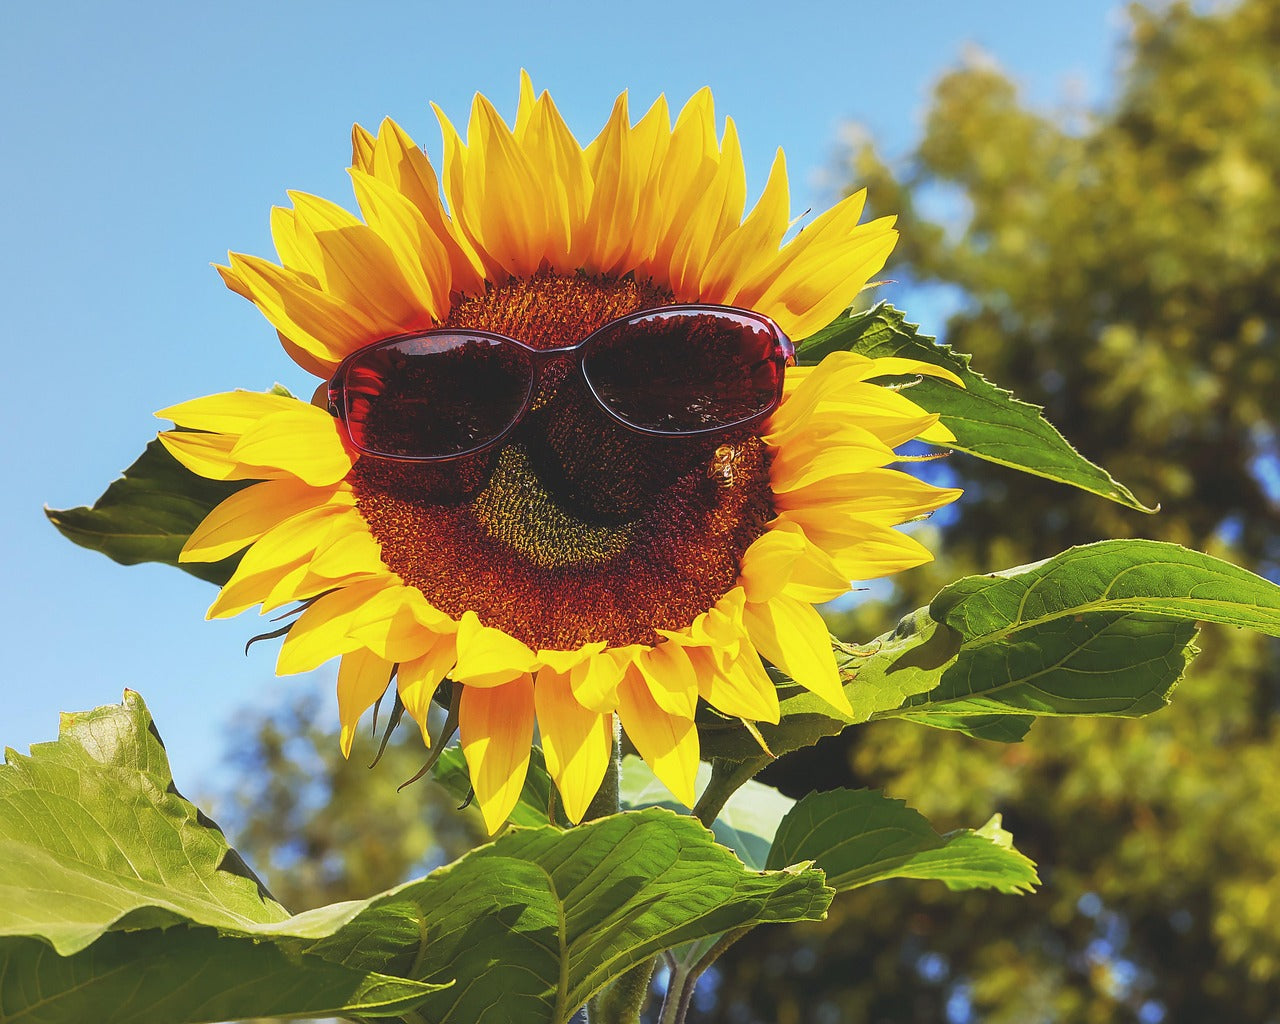 Sunflower wearing sunglasses